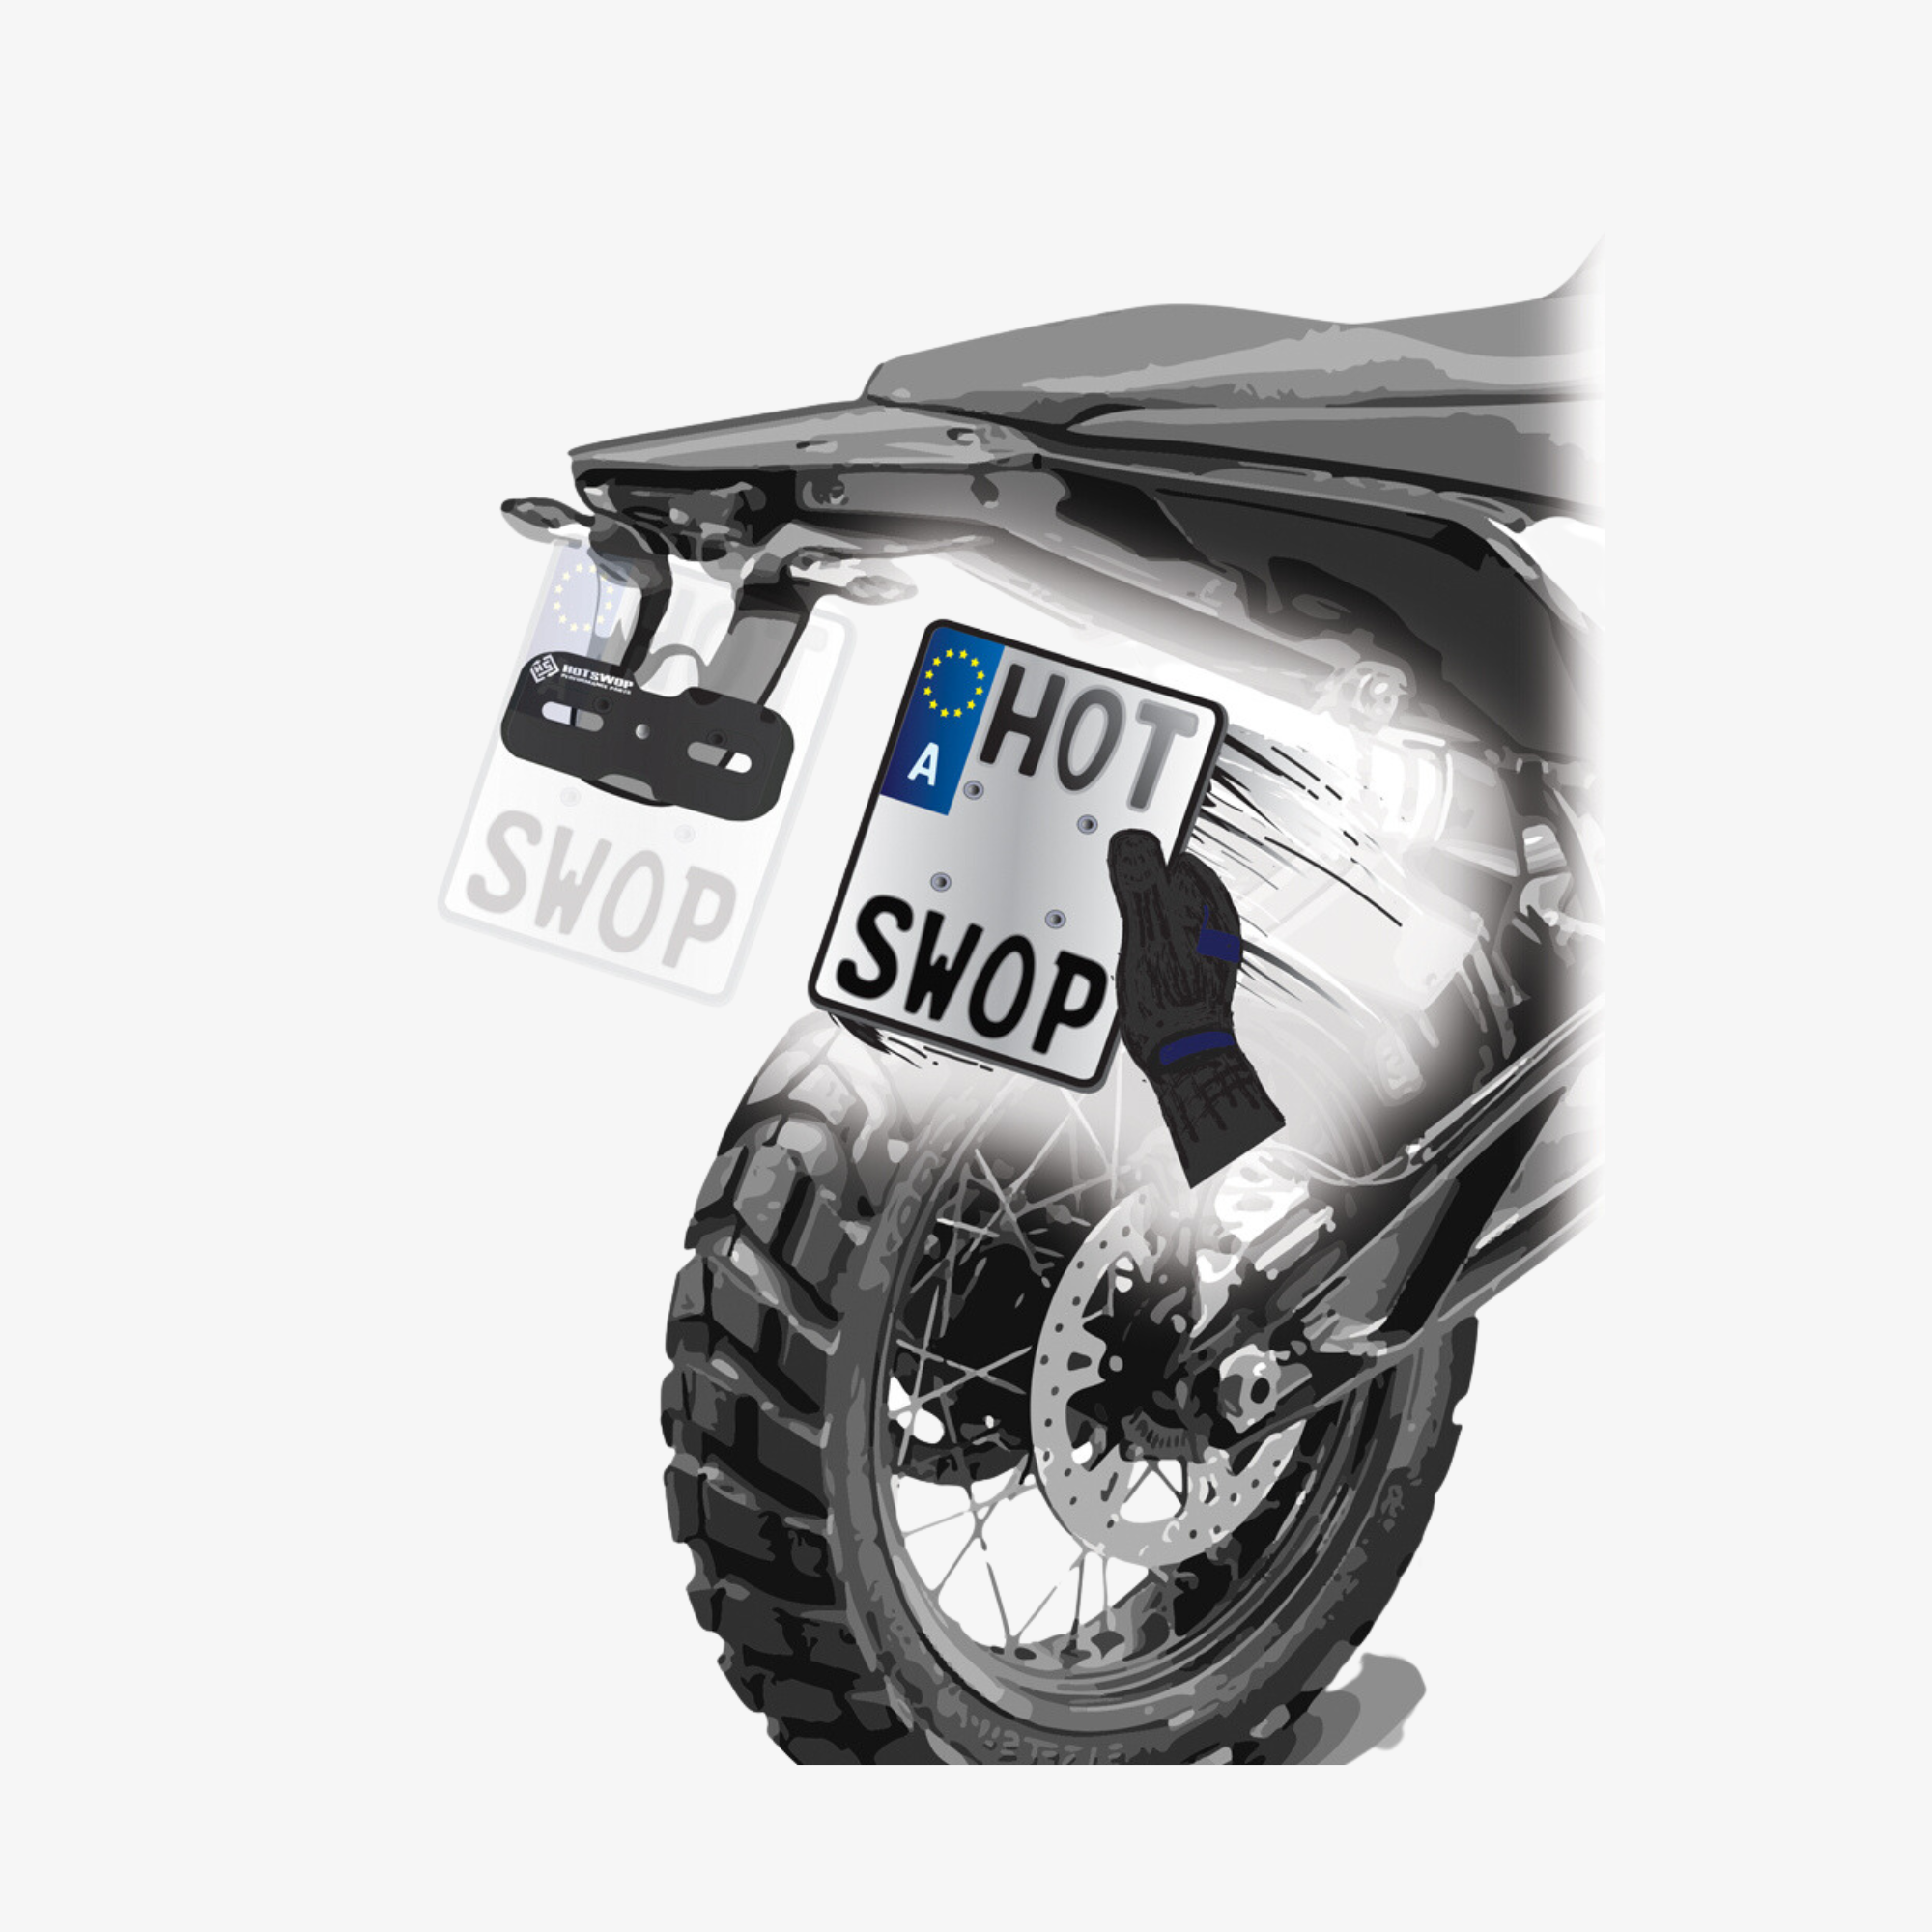 HotSwop Kennzeichen Halterungen für Motocross Enduro und Straßenbike